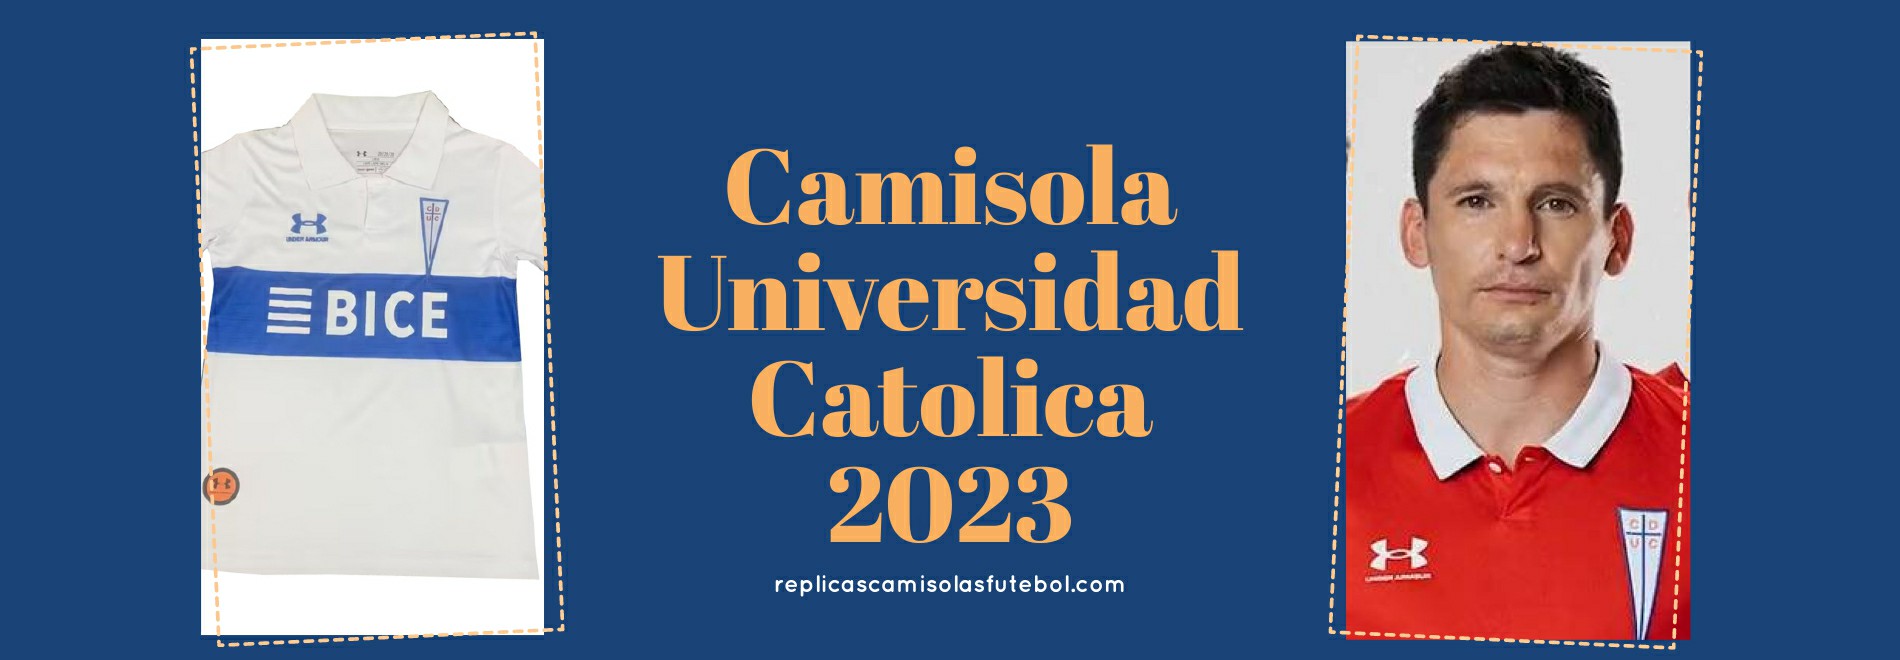 Camisola Universidad Catolica 2023-2024